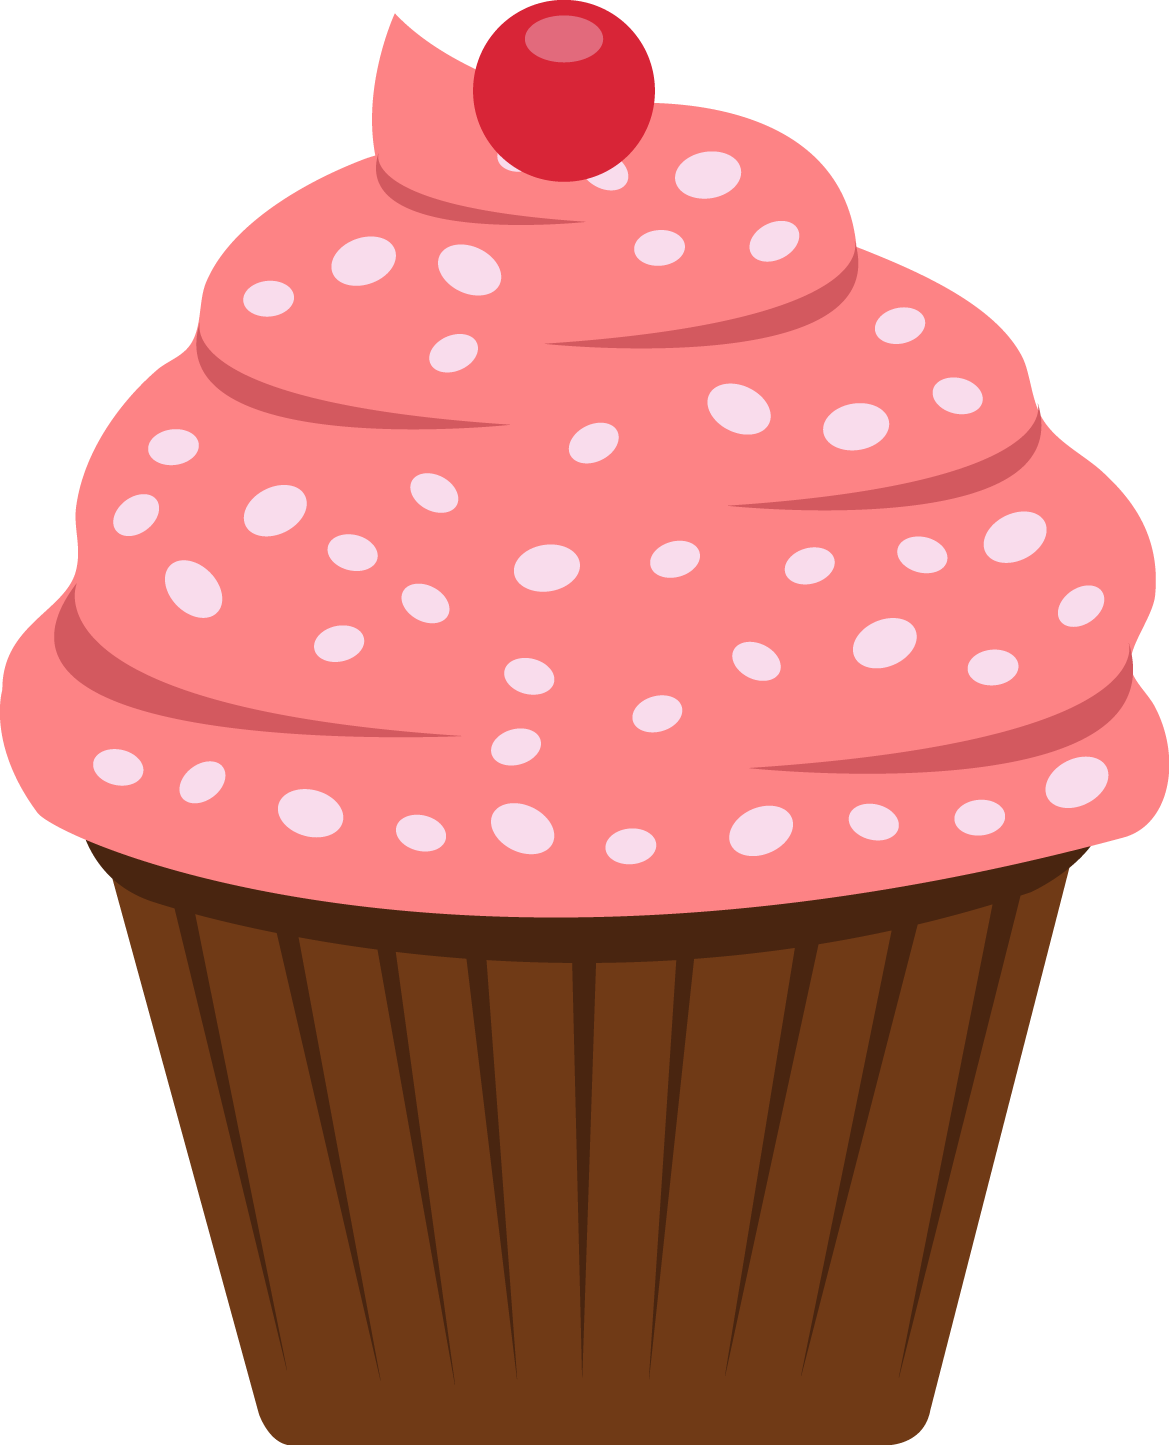 Ladybugs clipart cupcake. Pin by rhonda fogle